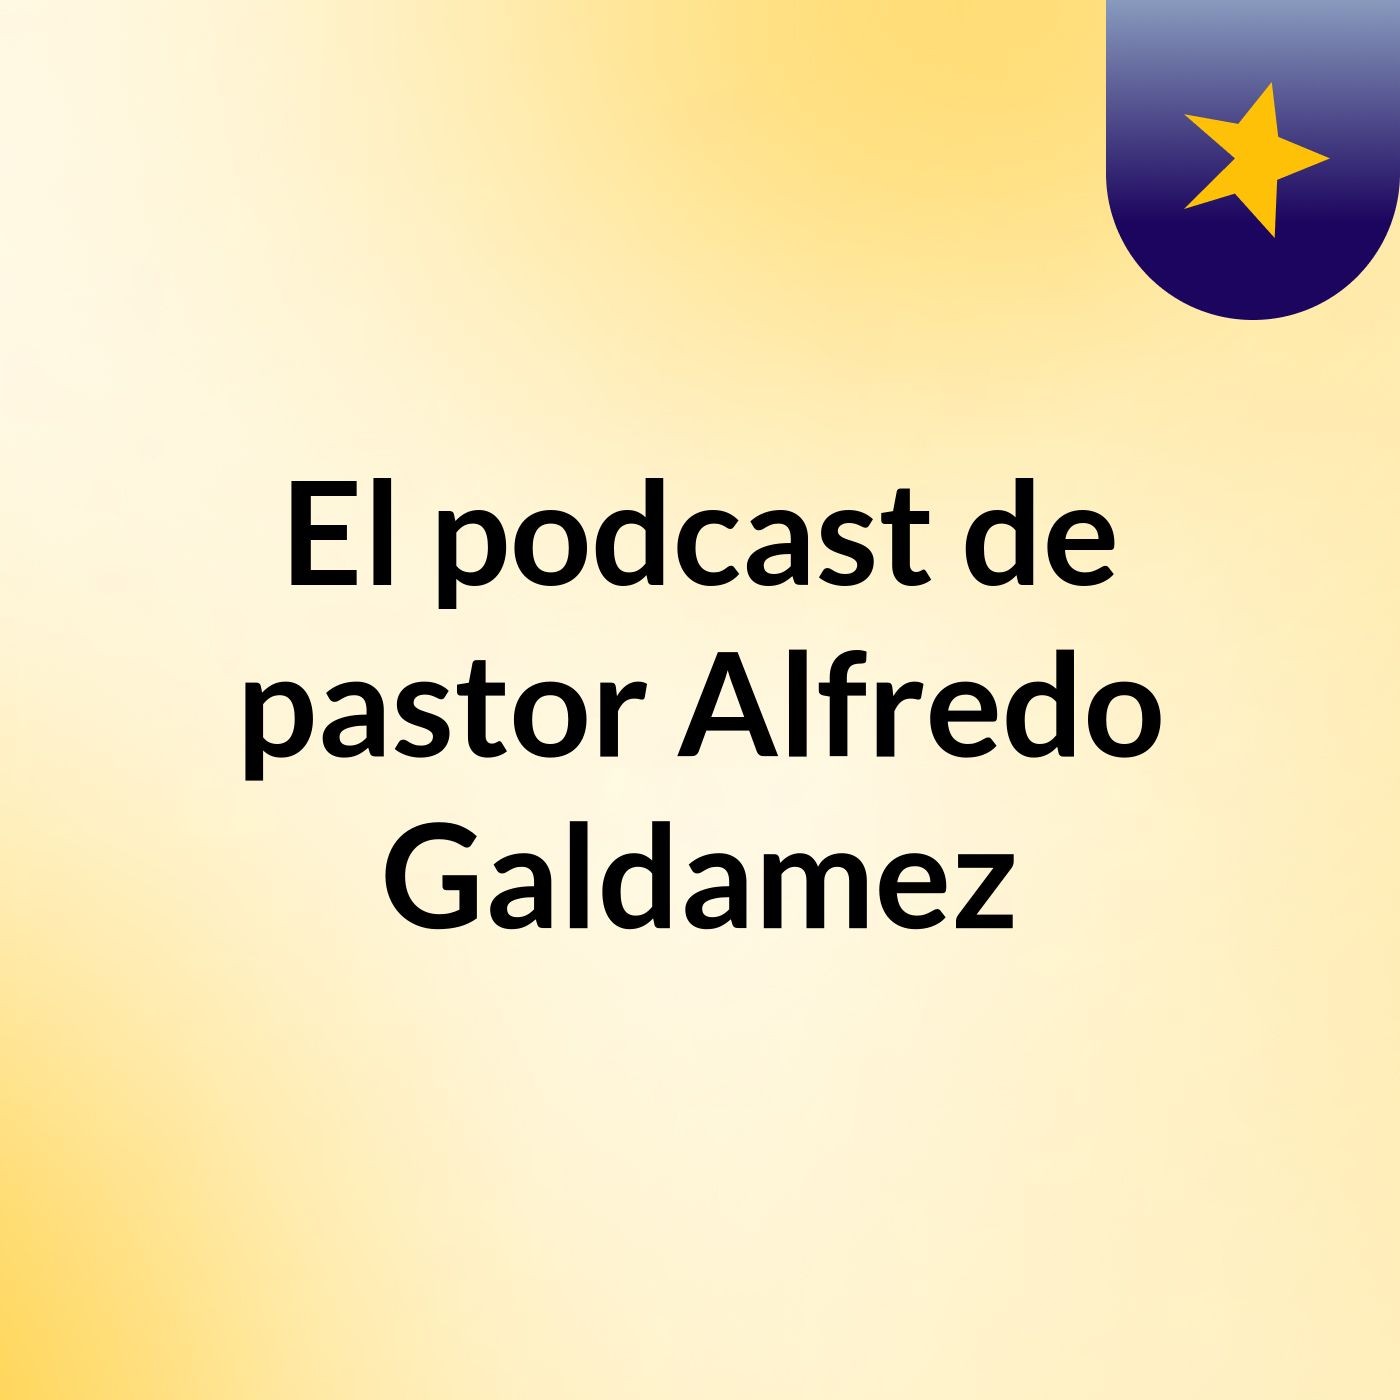 El podcast de pastor Alfredo Galdamez